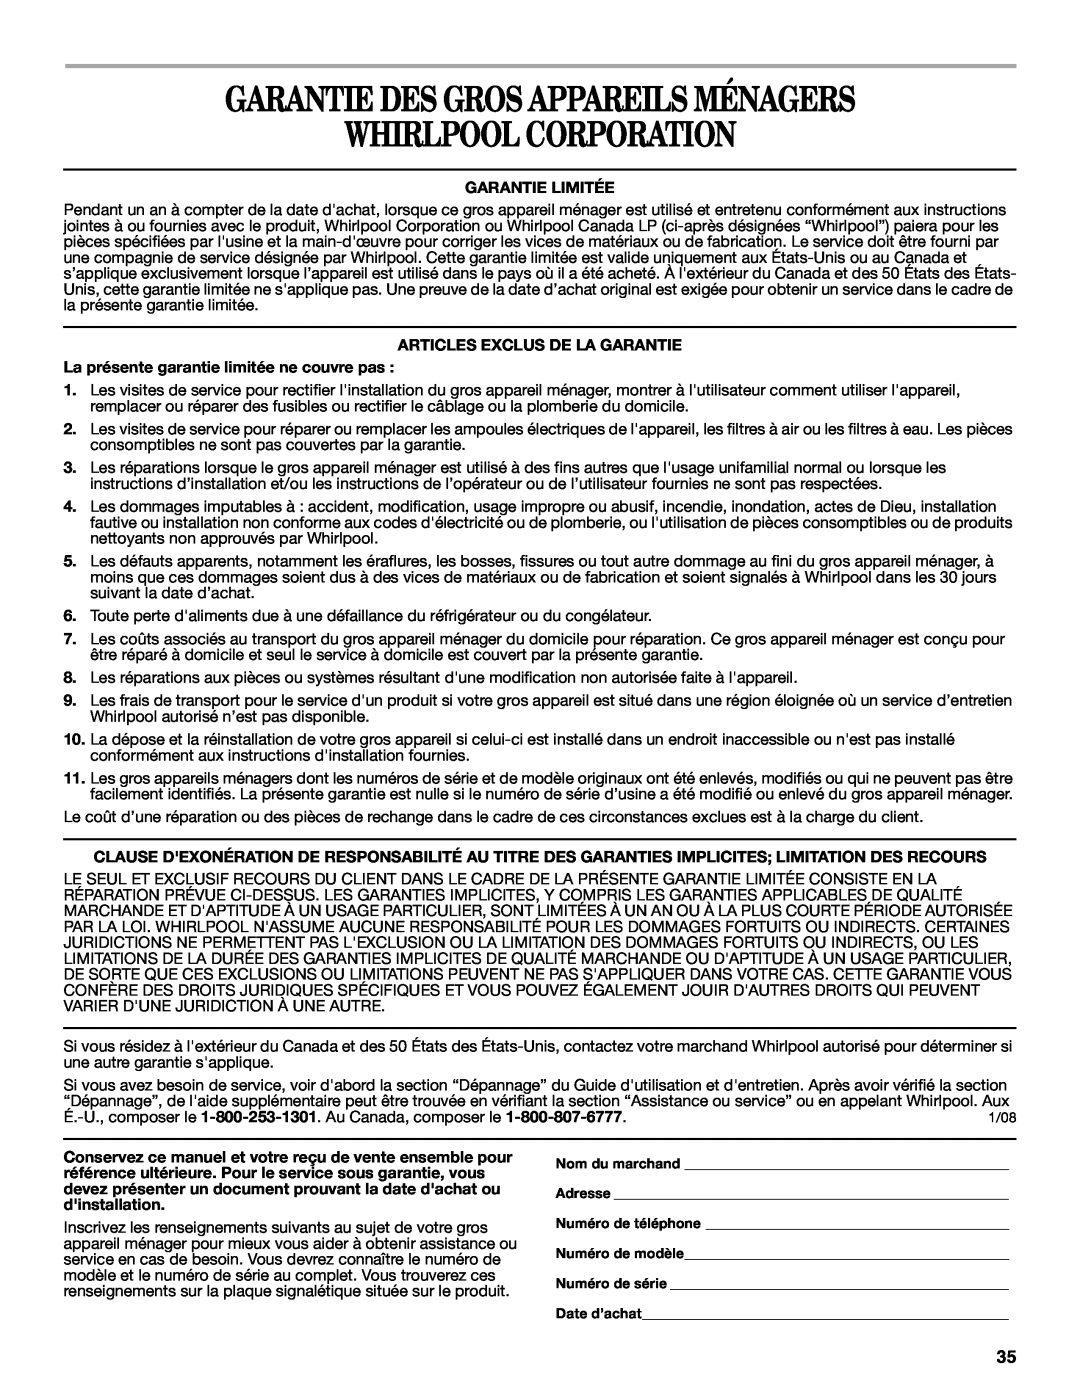 Whirlpool GSC309 manual Garantie Des Gros Appareils Ménagers Whirlpool Corporation, Garantie Limitée 